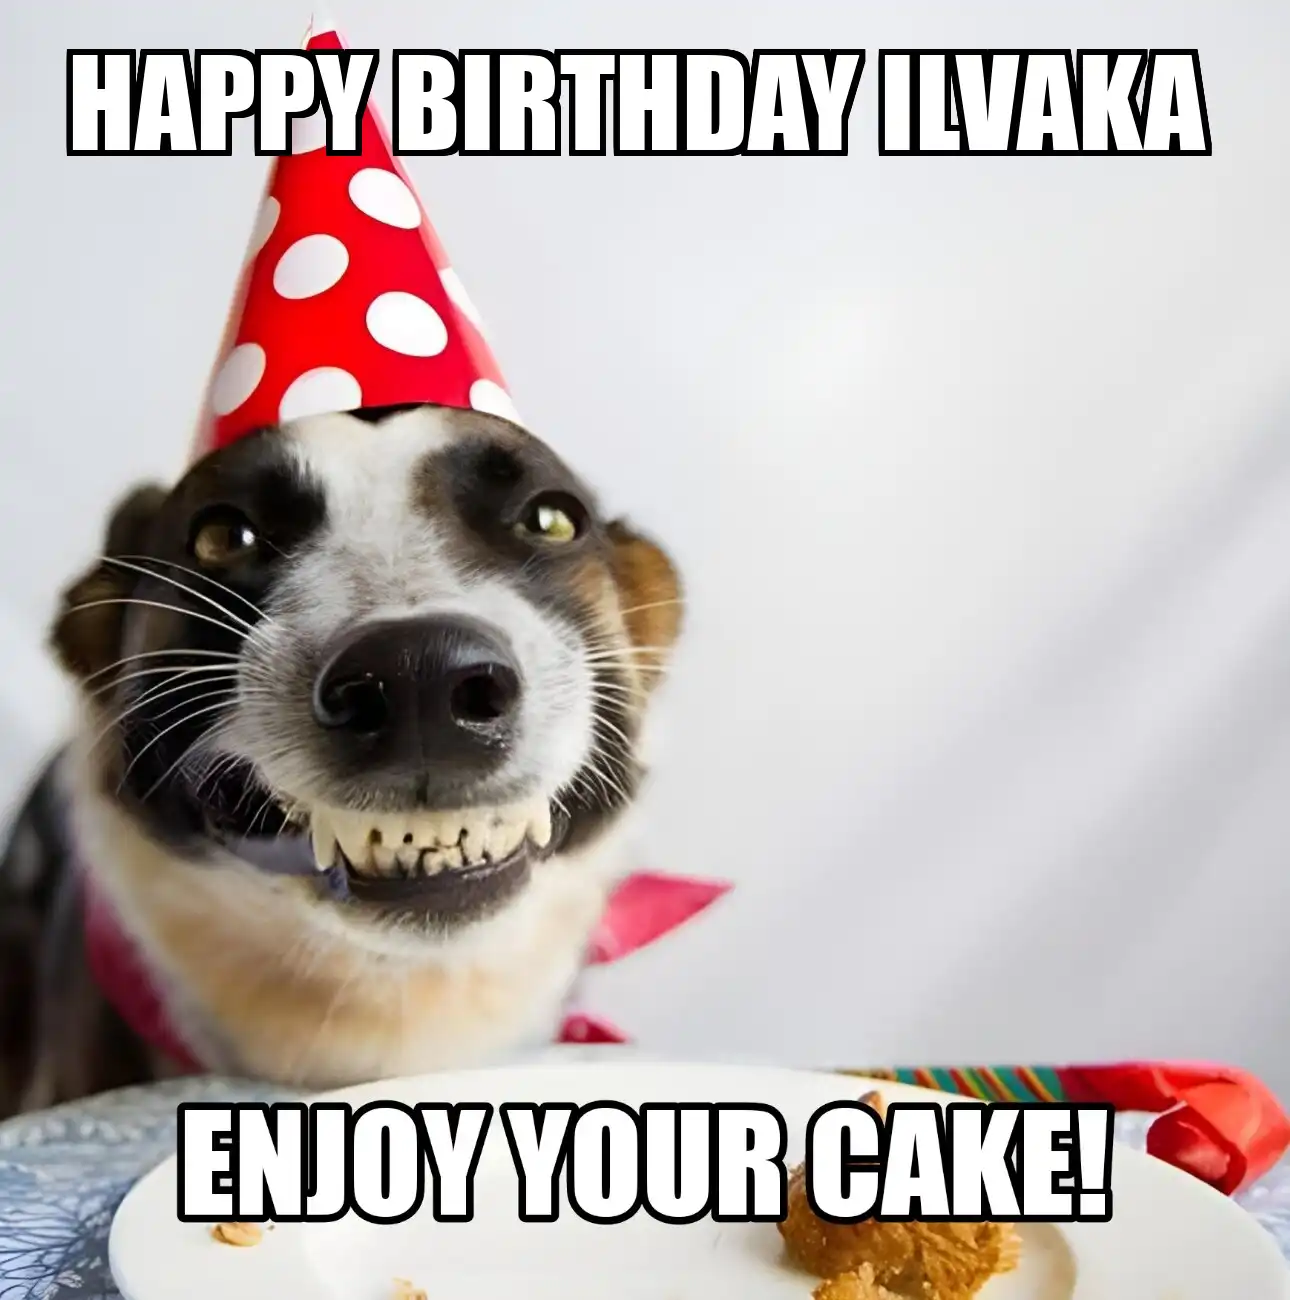 Happy Birthday Ilvaka Enjoy Your Cake Dog Meme